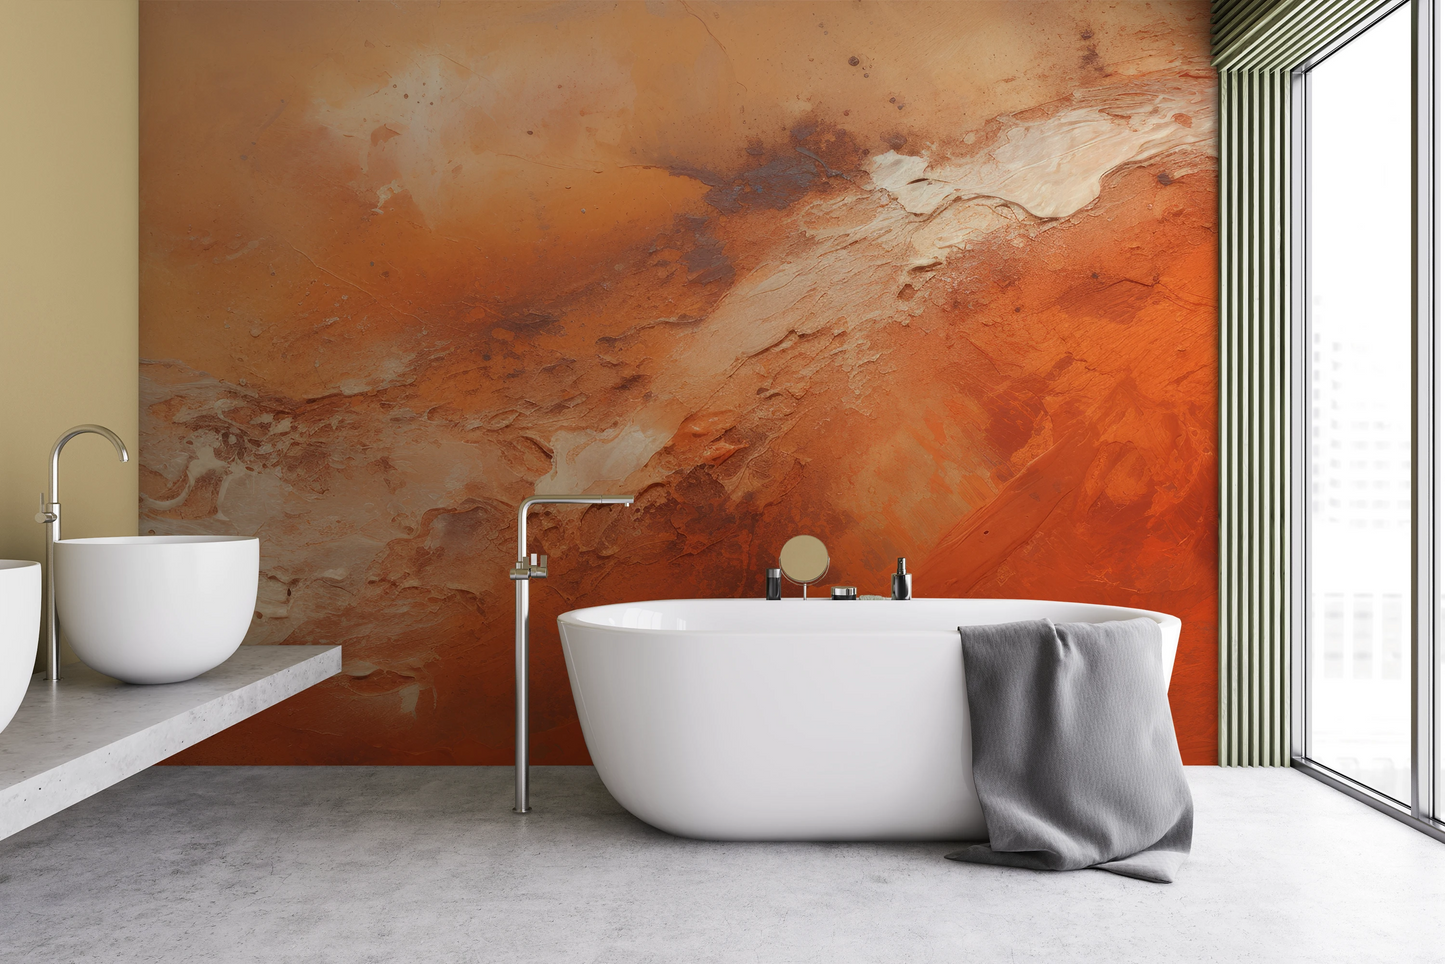 Fototapeta malowana o nazwie Mars' Warmth pokazana w aranżacji wnętrza.